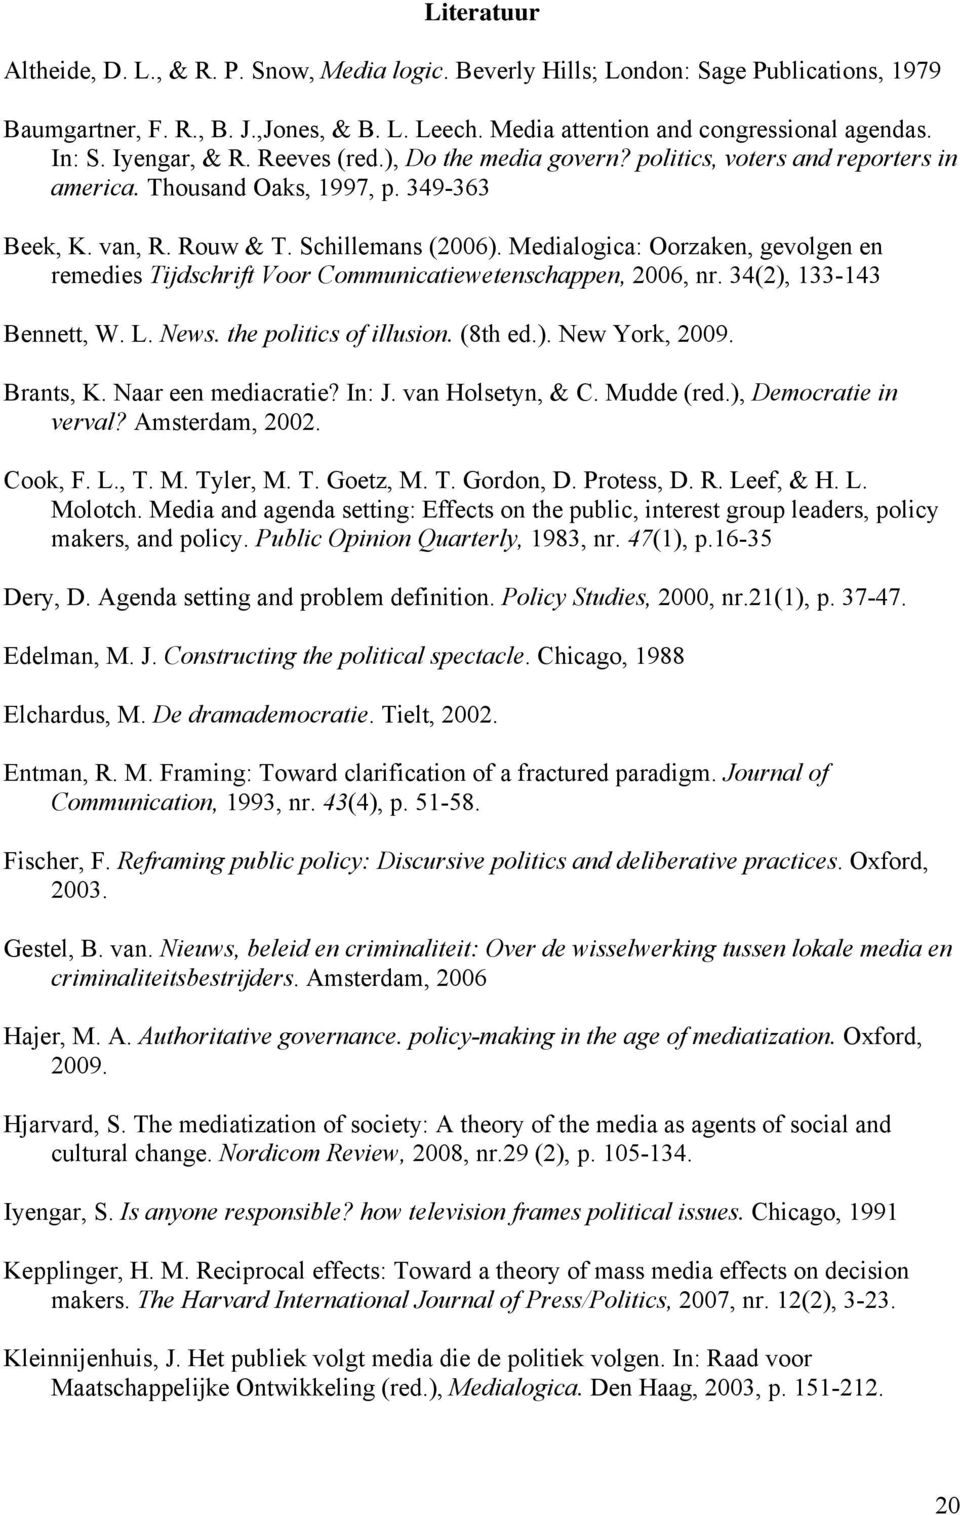 Medialogica: Oorzaken, gevolgen en remedies Tijdschrift Voor Communicatiewetenschappen, 2006, nr. 34(2), 133-143 Bennett, W. L. News. the politics of illusion. (8th ed.). New York, 2009. Brants, K.